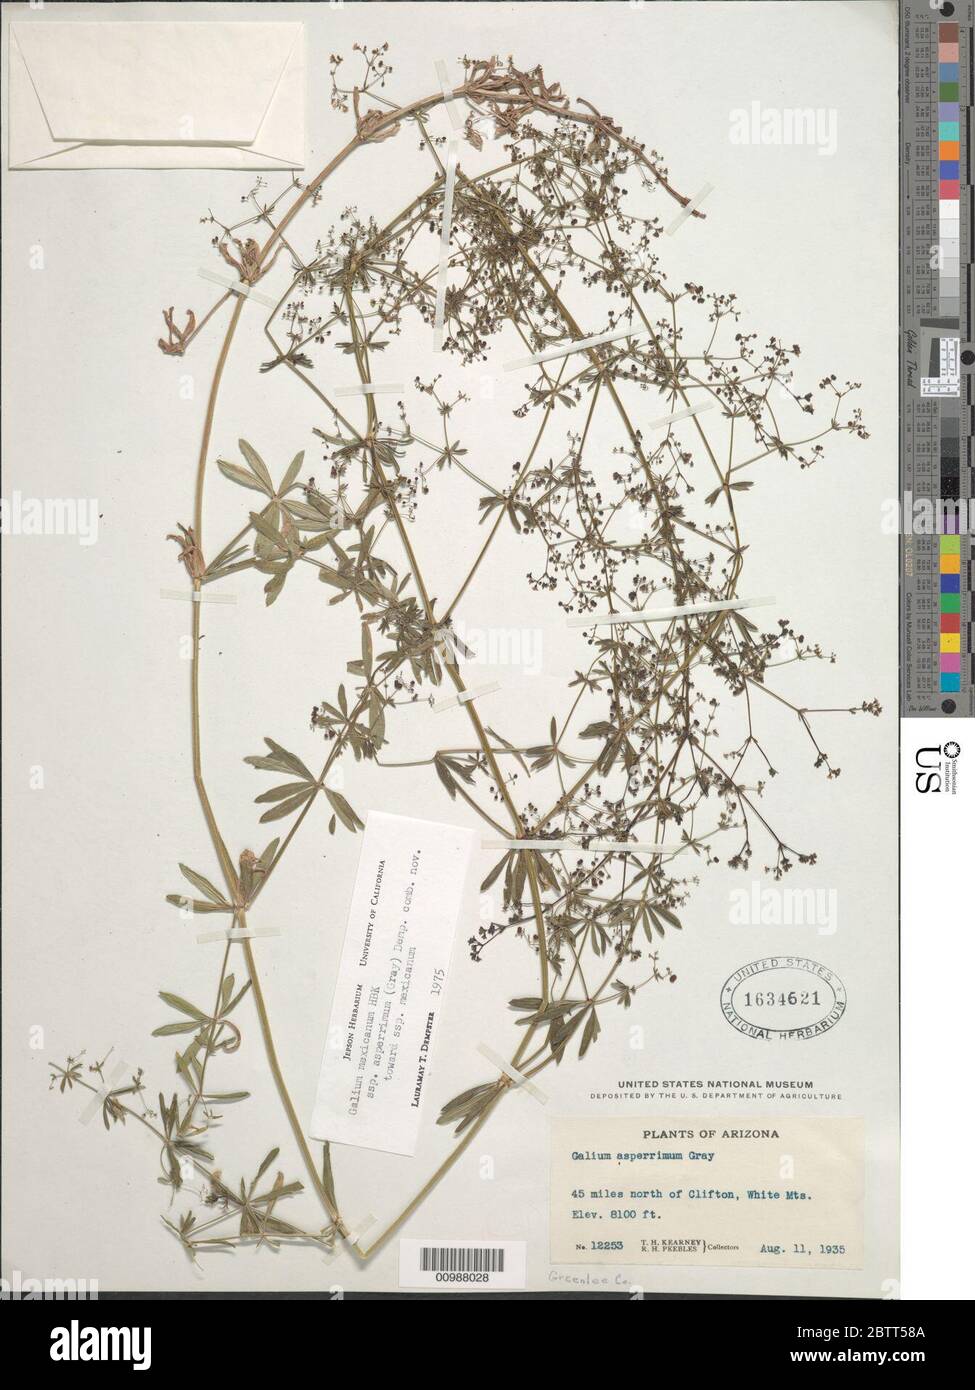 Galium mexicanum subsp asperrimum A Gray Dempster. Stock Photo